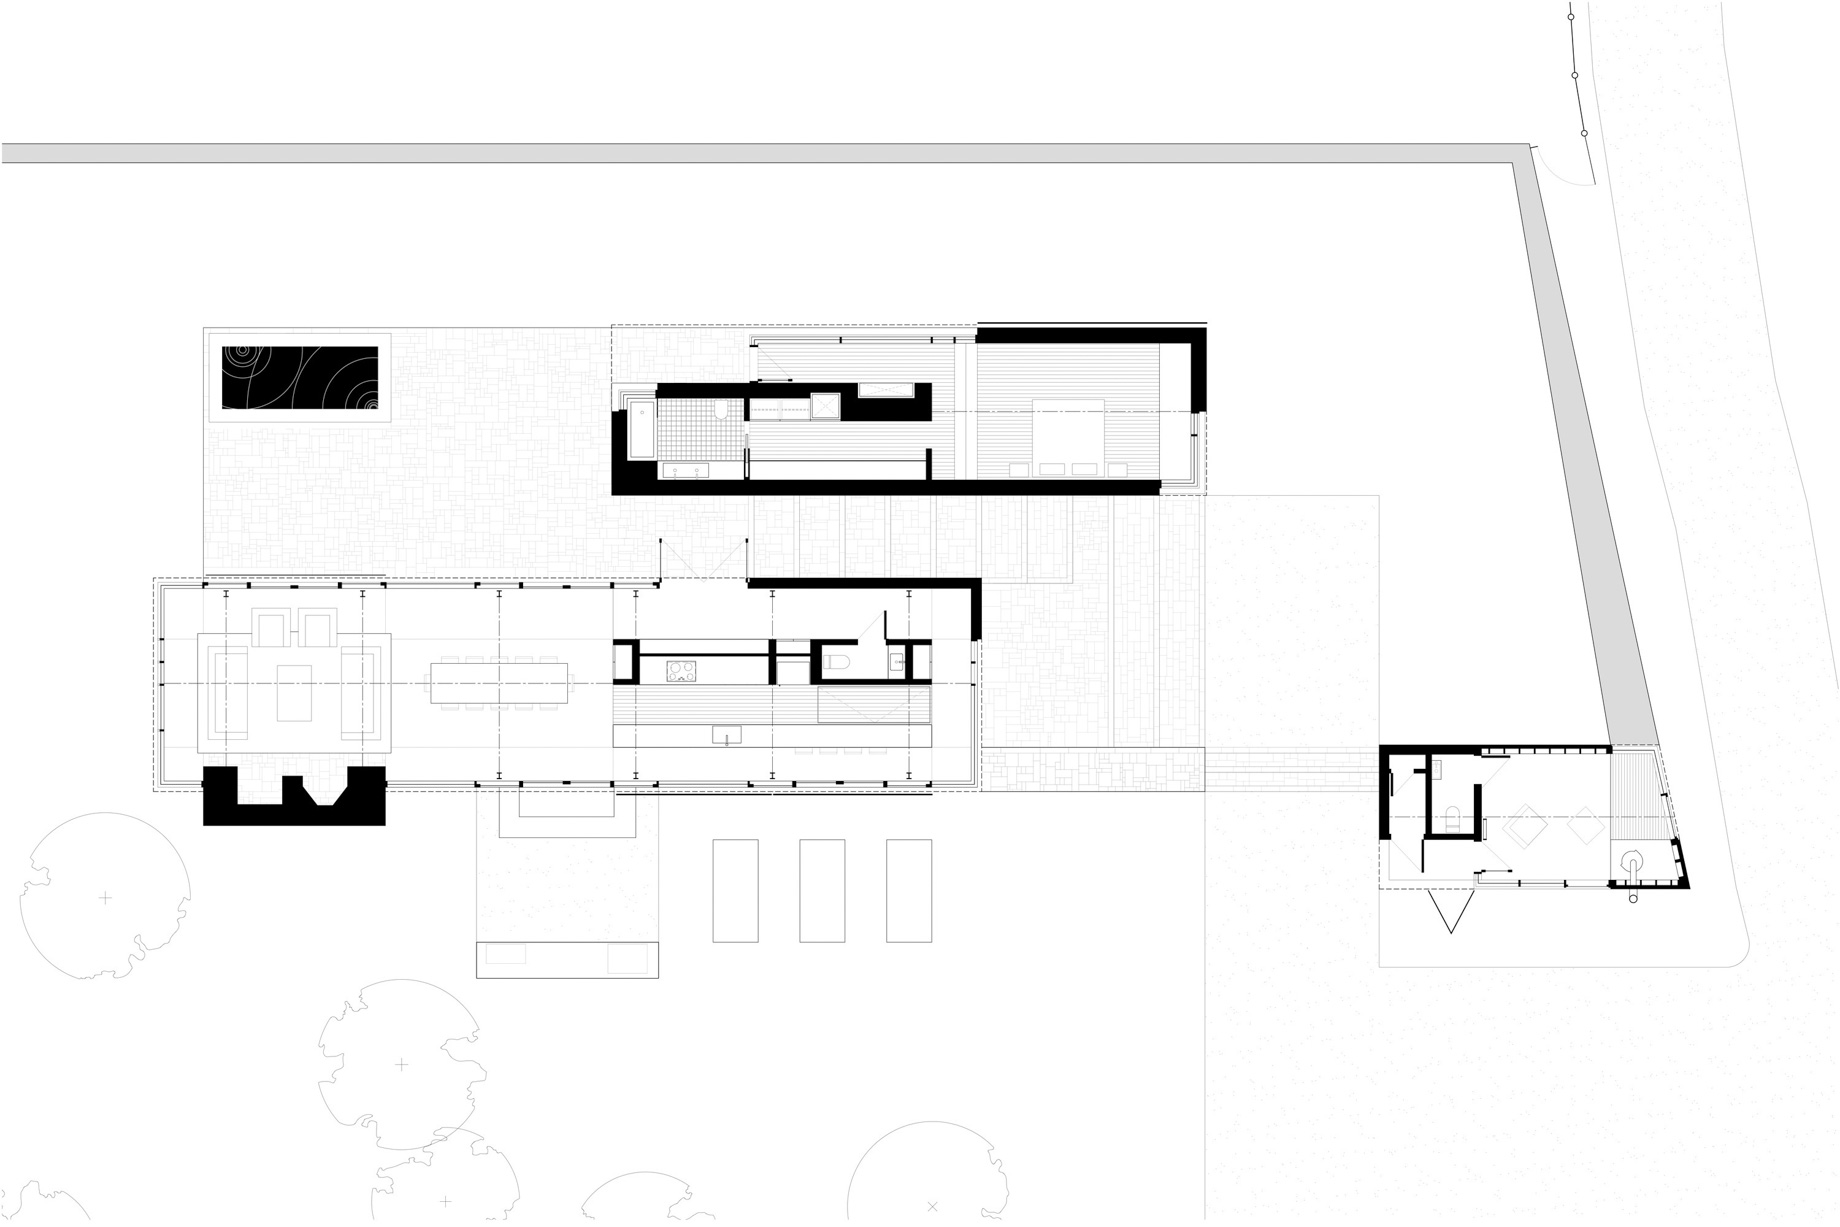 Smith House Residence – Upper Kingsburg, NS, Canada – Floor Plan